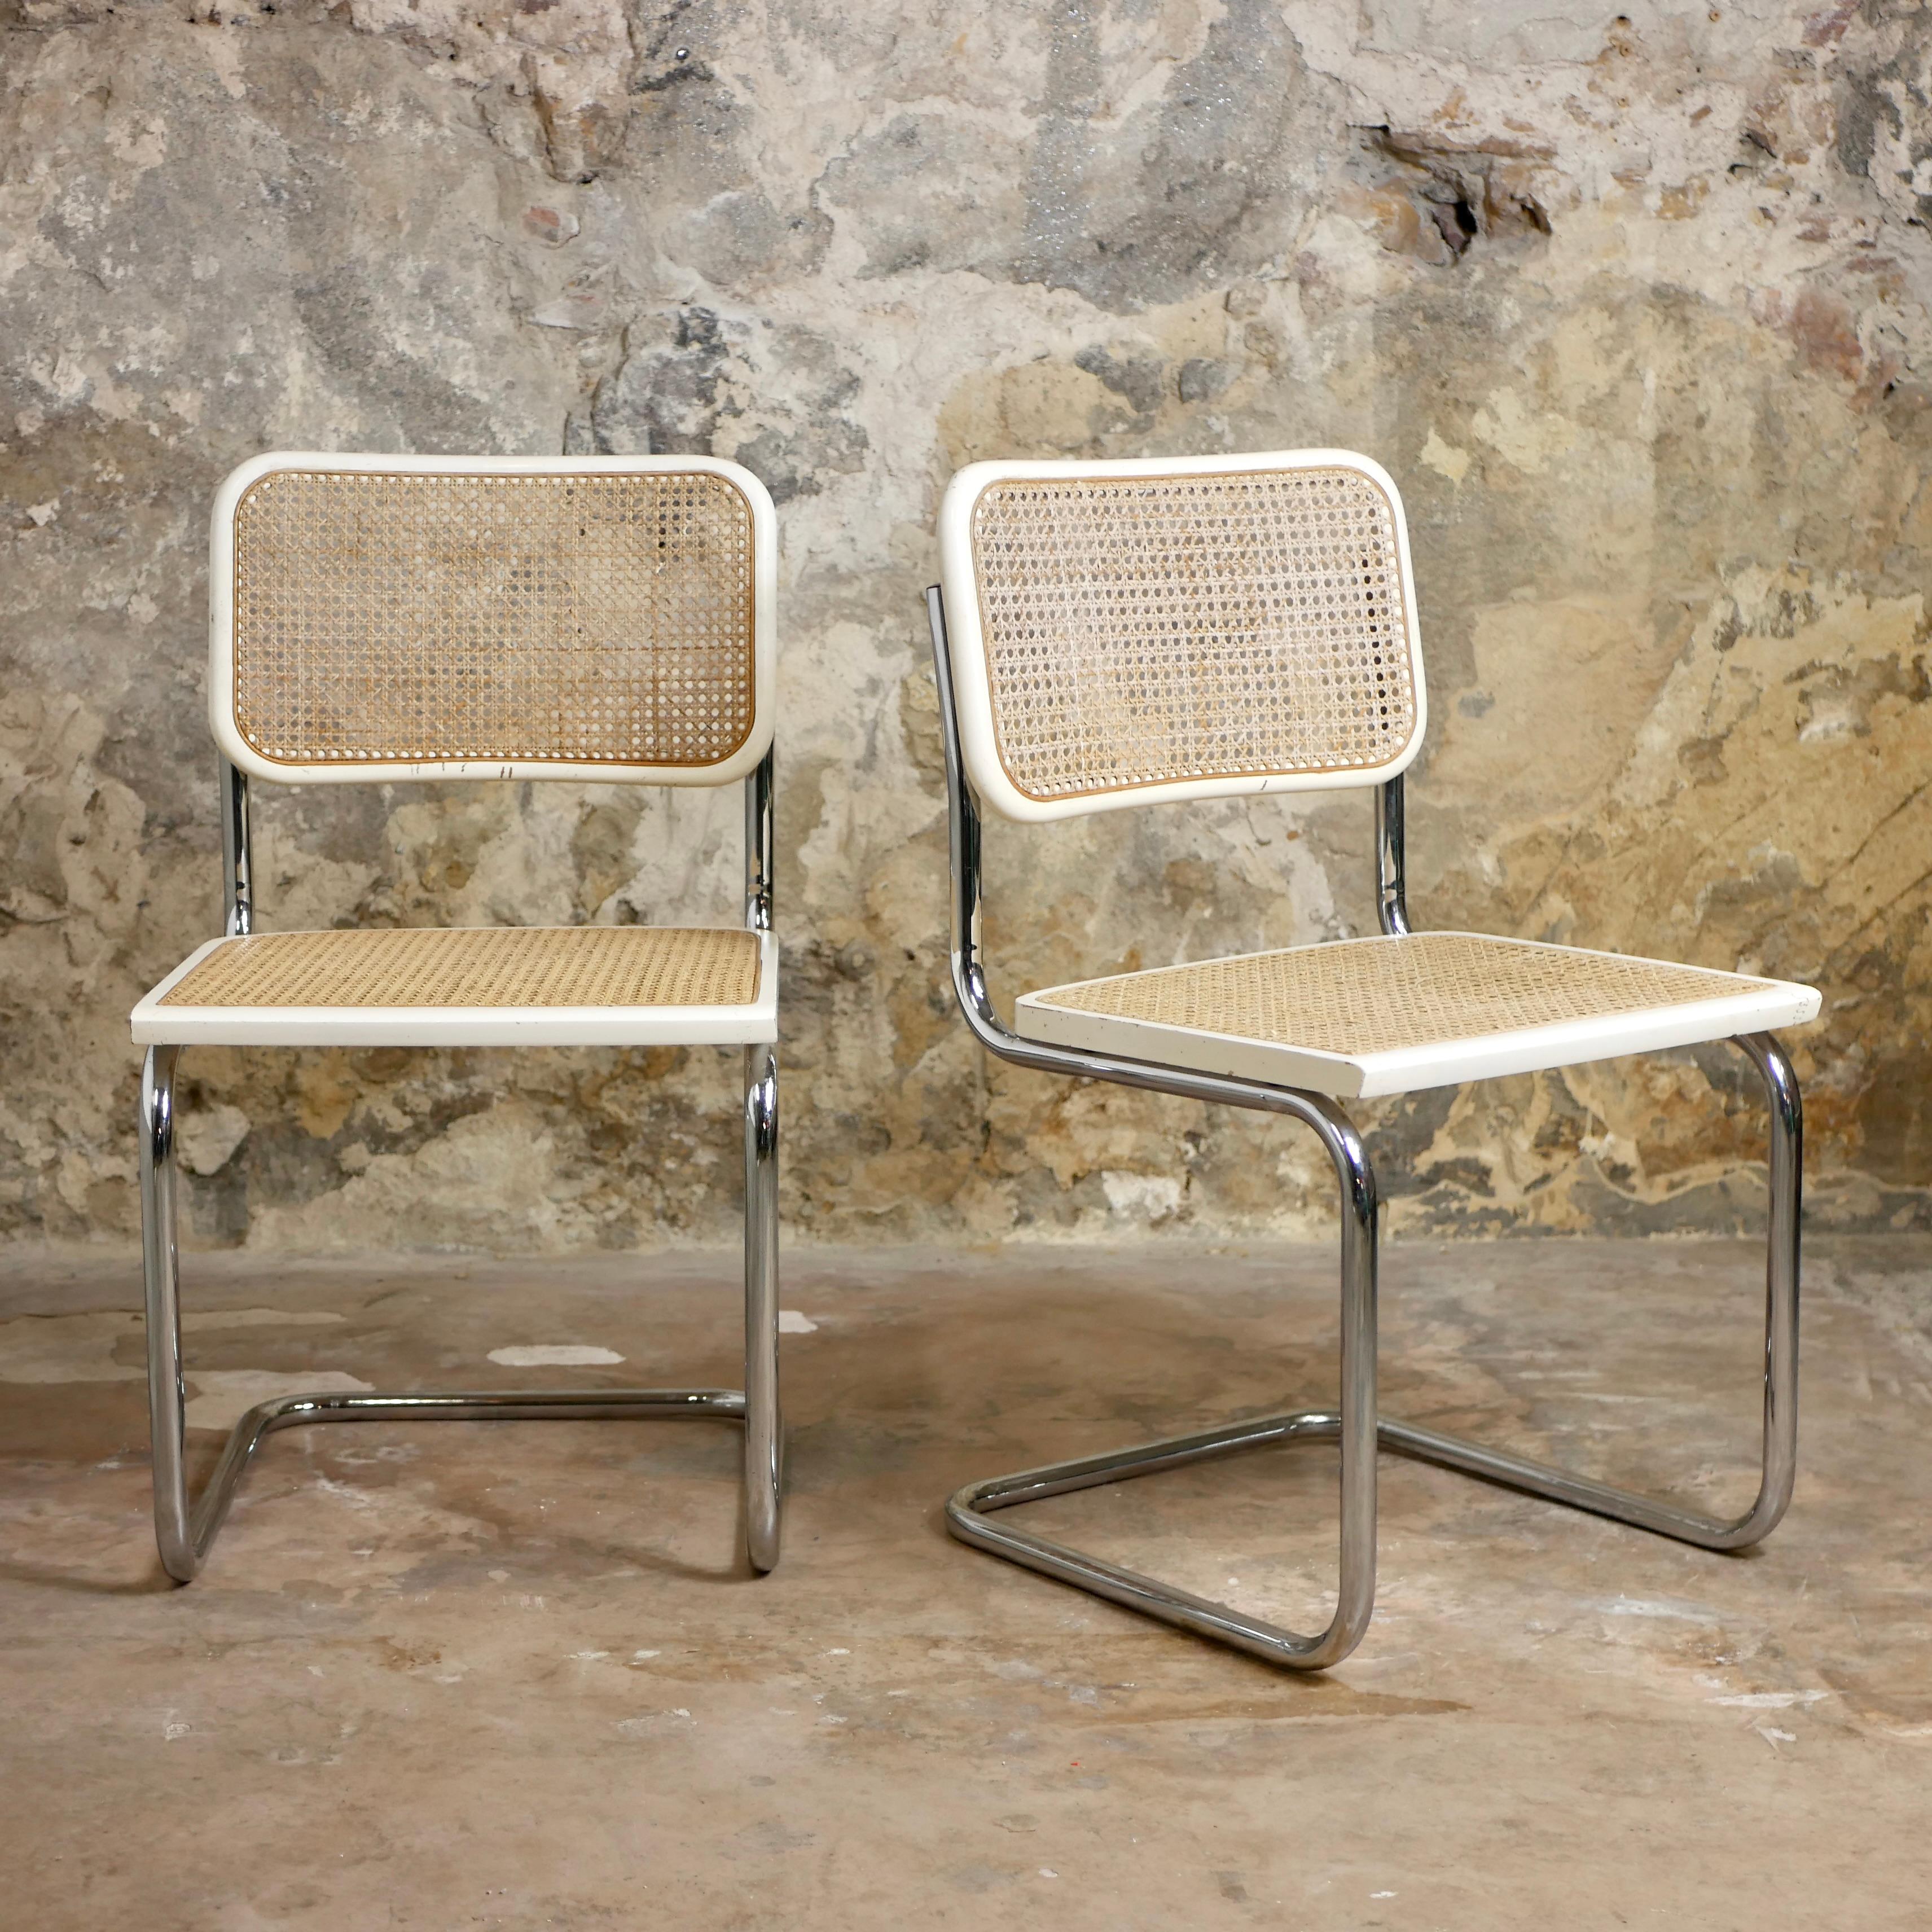 Magnifique paire de chaises blanches Cesca, fabriquées en Italie dans les années 1970, d'après un design de Marcel Breuer (1928).
Beeche et hêtre laqué blanc.
Bon état général, quelques légères traces du temps.
Estampillé 